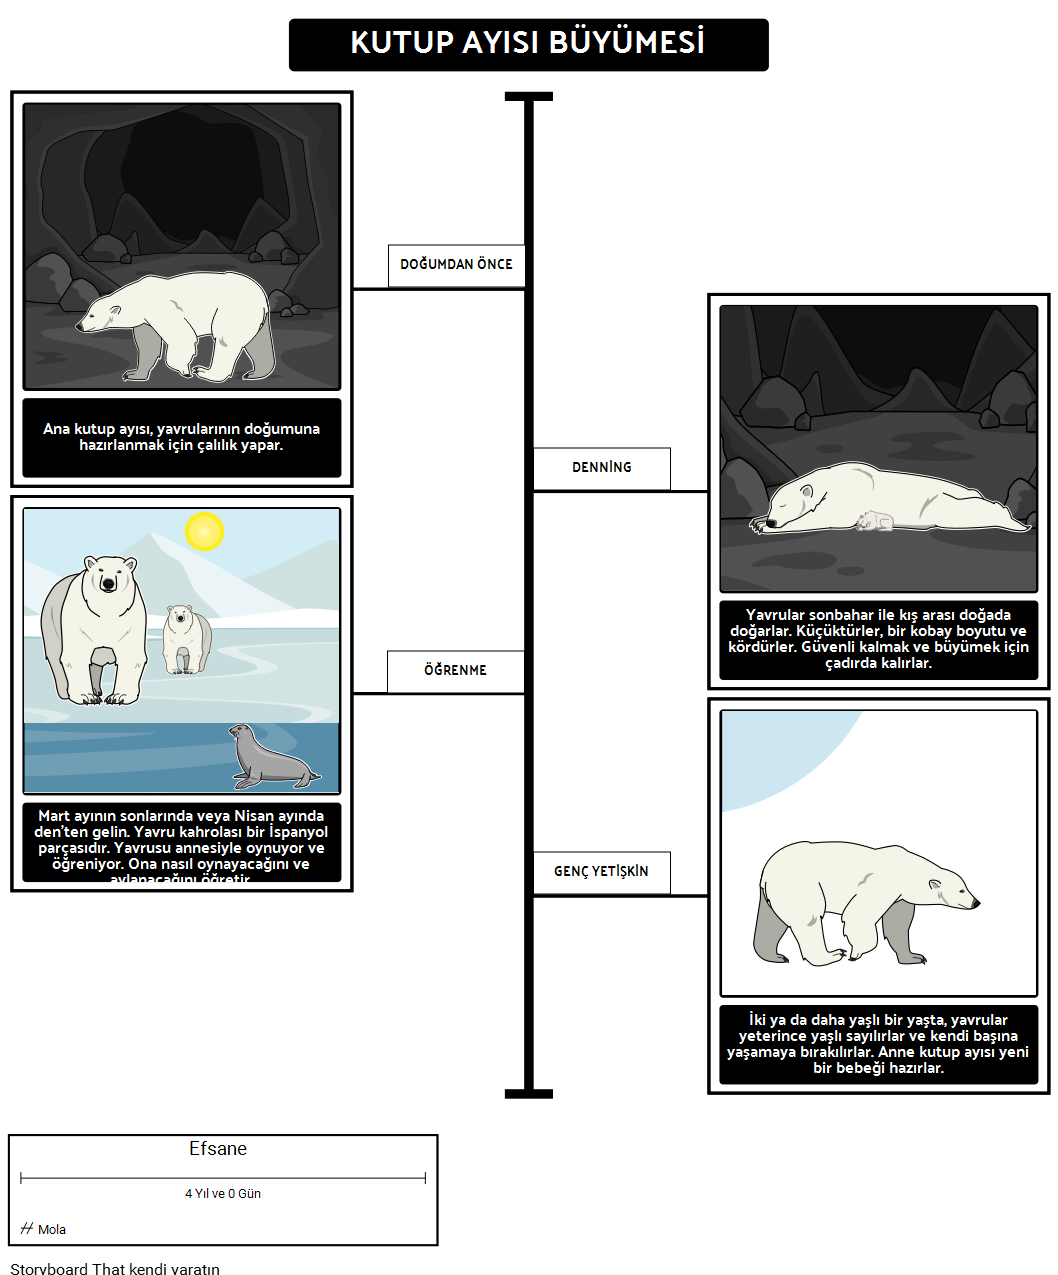 Kutup Ayıları Nerede Yaşıyor? Kutup Ayısı Büyümesi